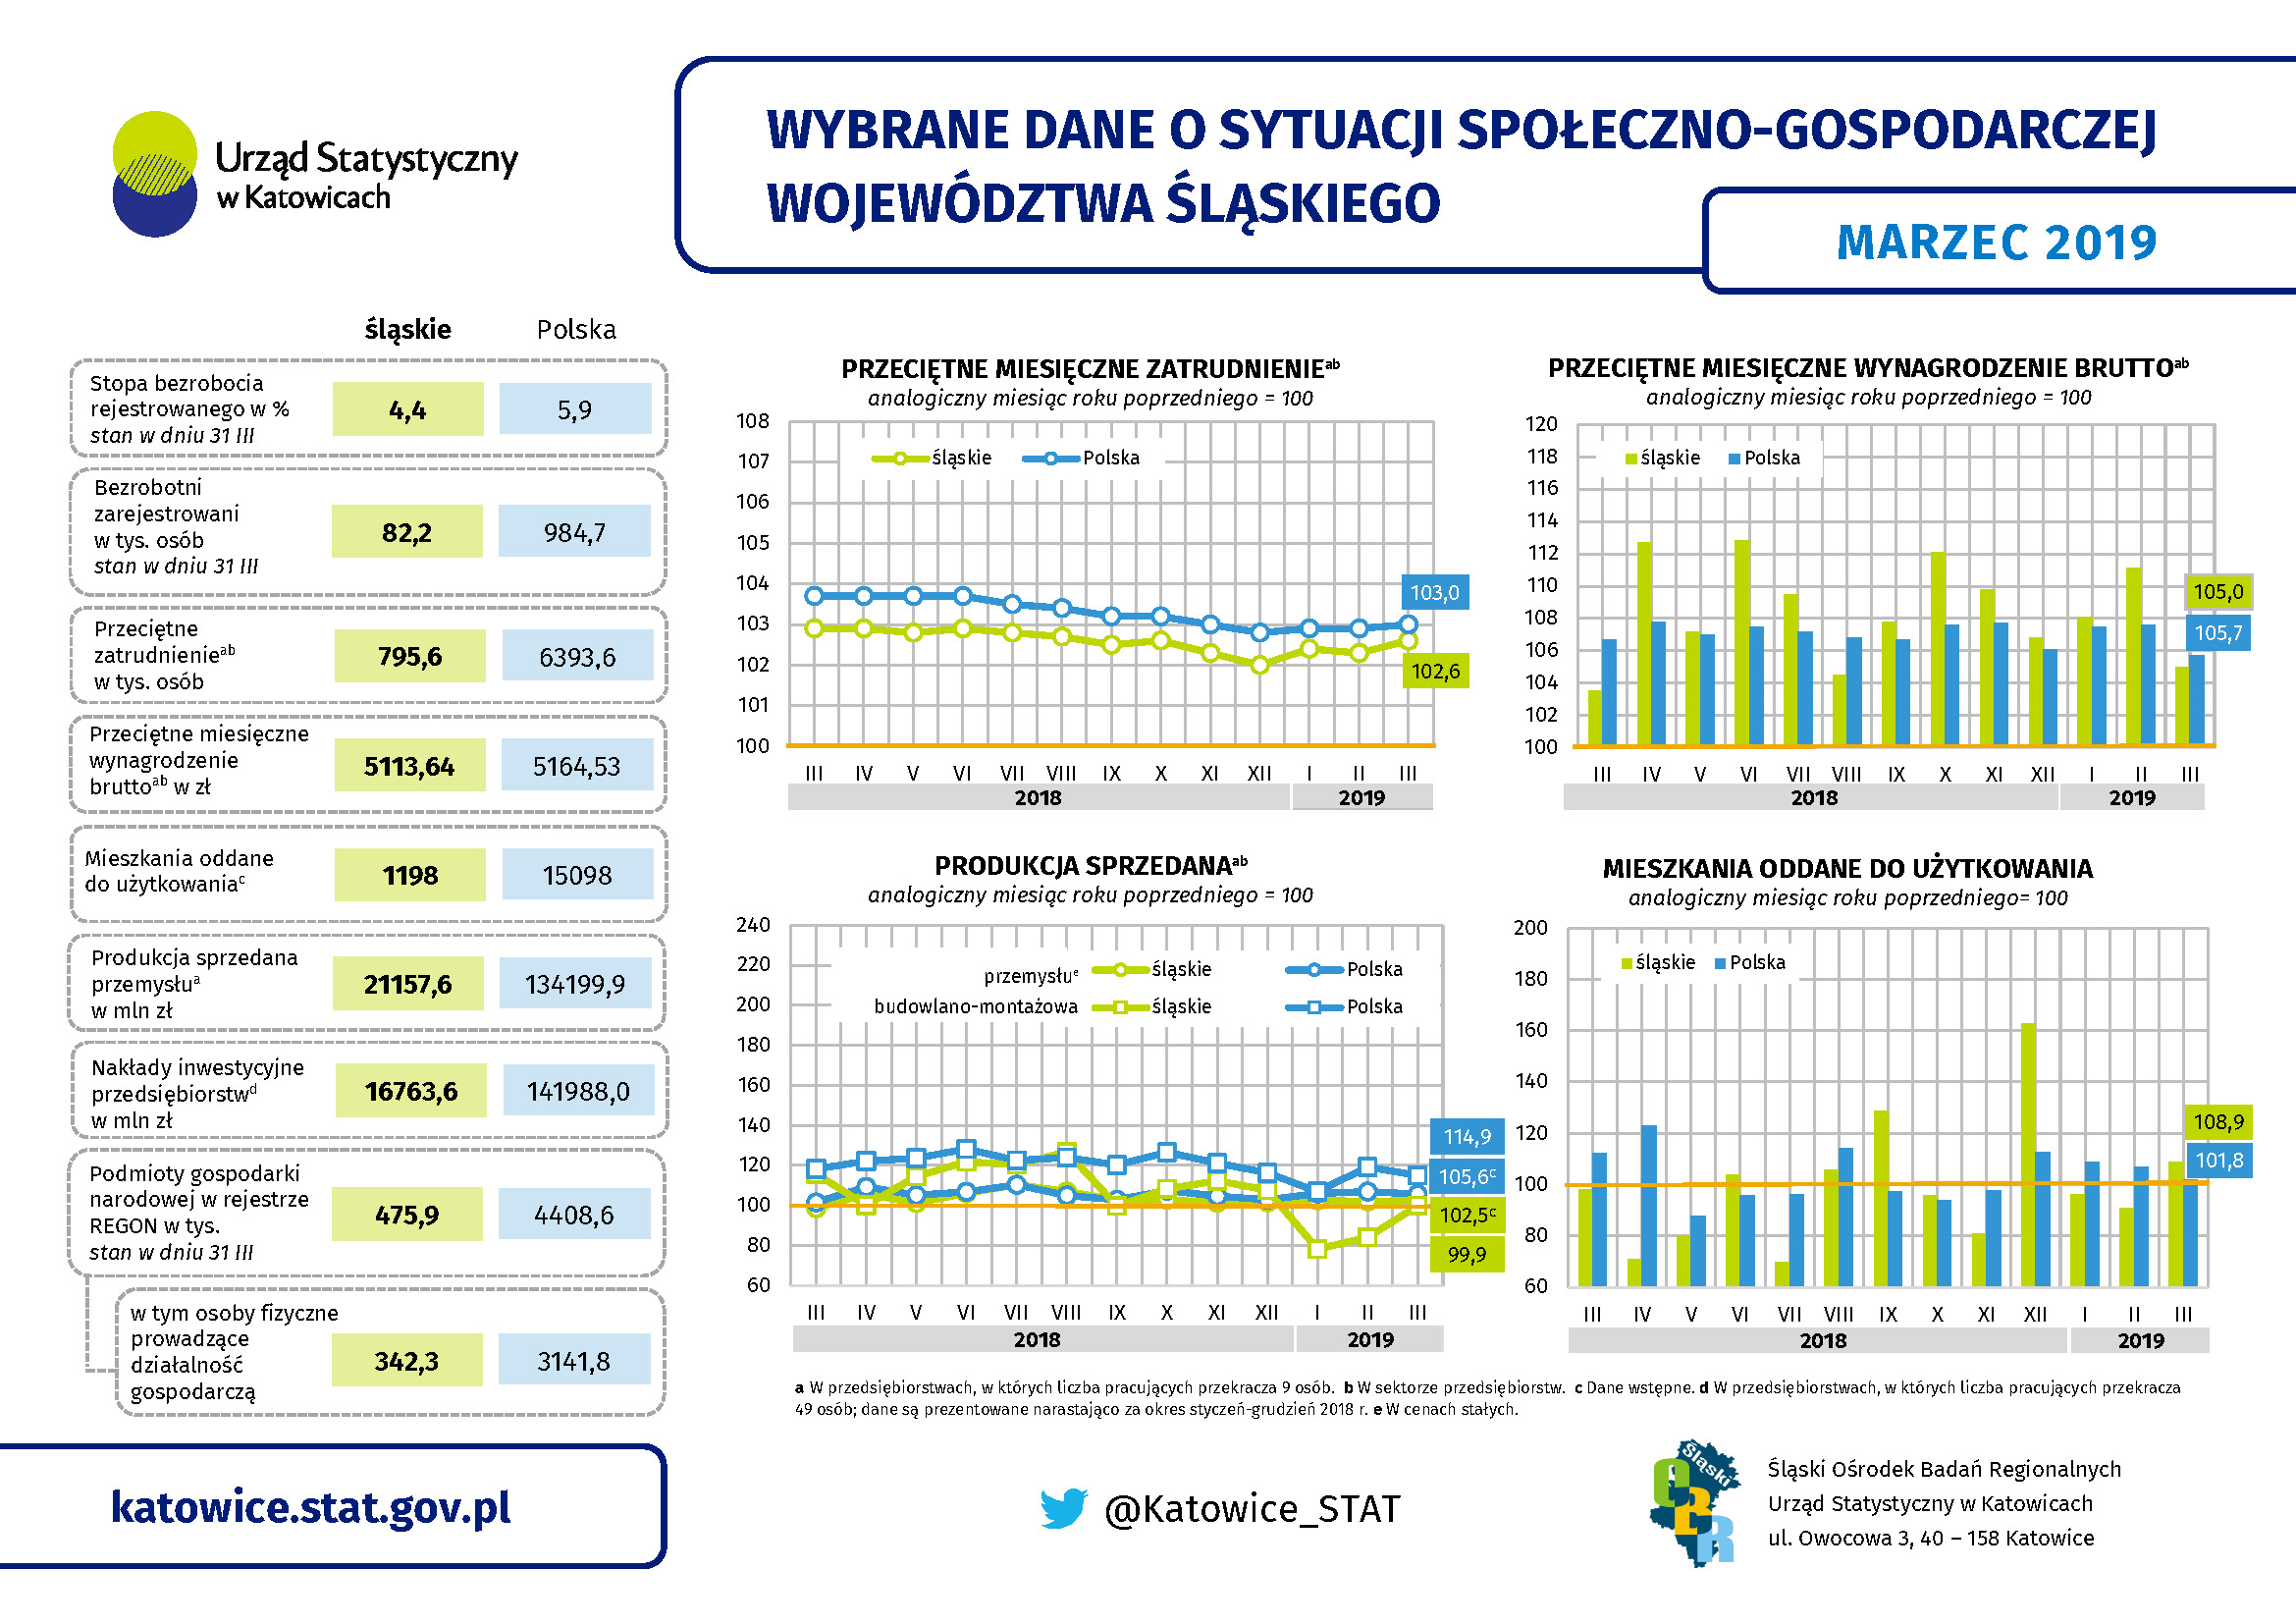 Wybrane dane o sytuacji społeczno-gospodarczej województwa śląskiego w marcu 2019 r. (Infografika)